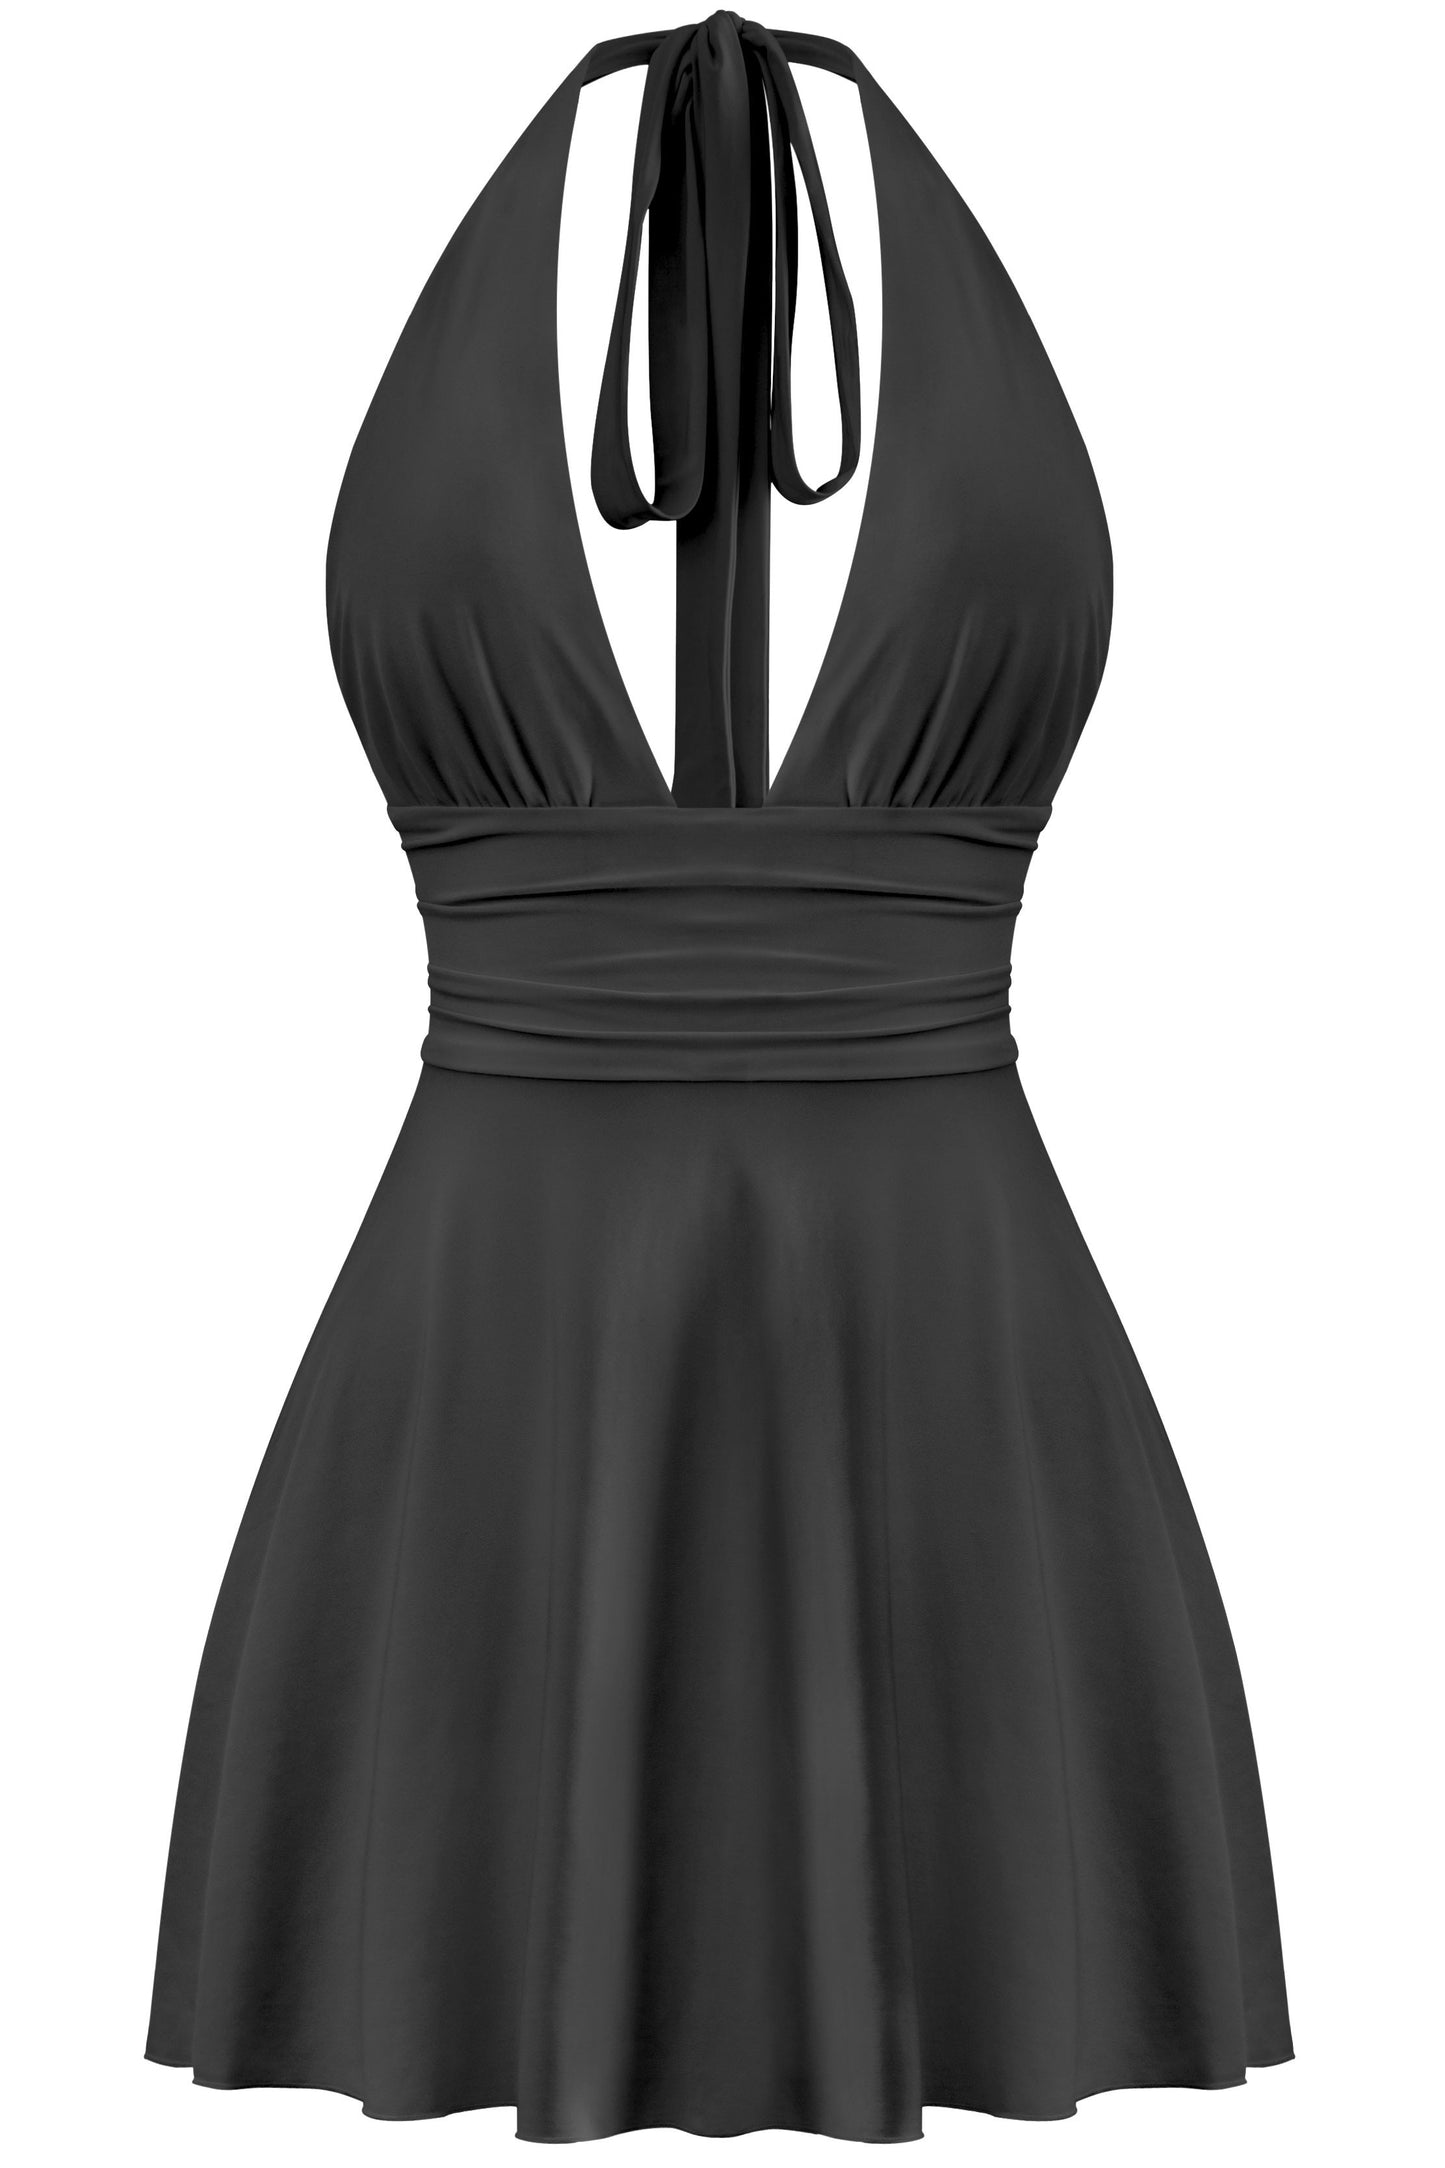 Berenice halter open back dress - Black